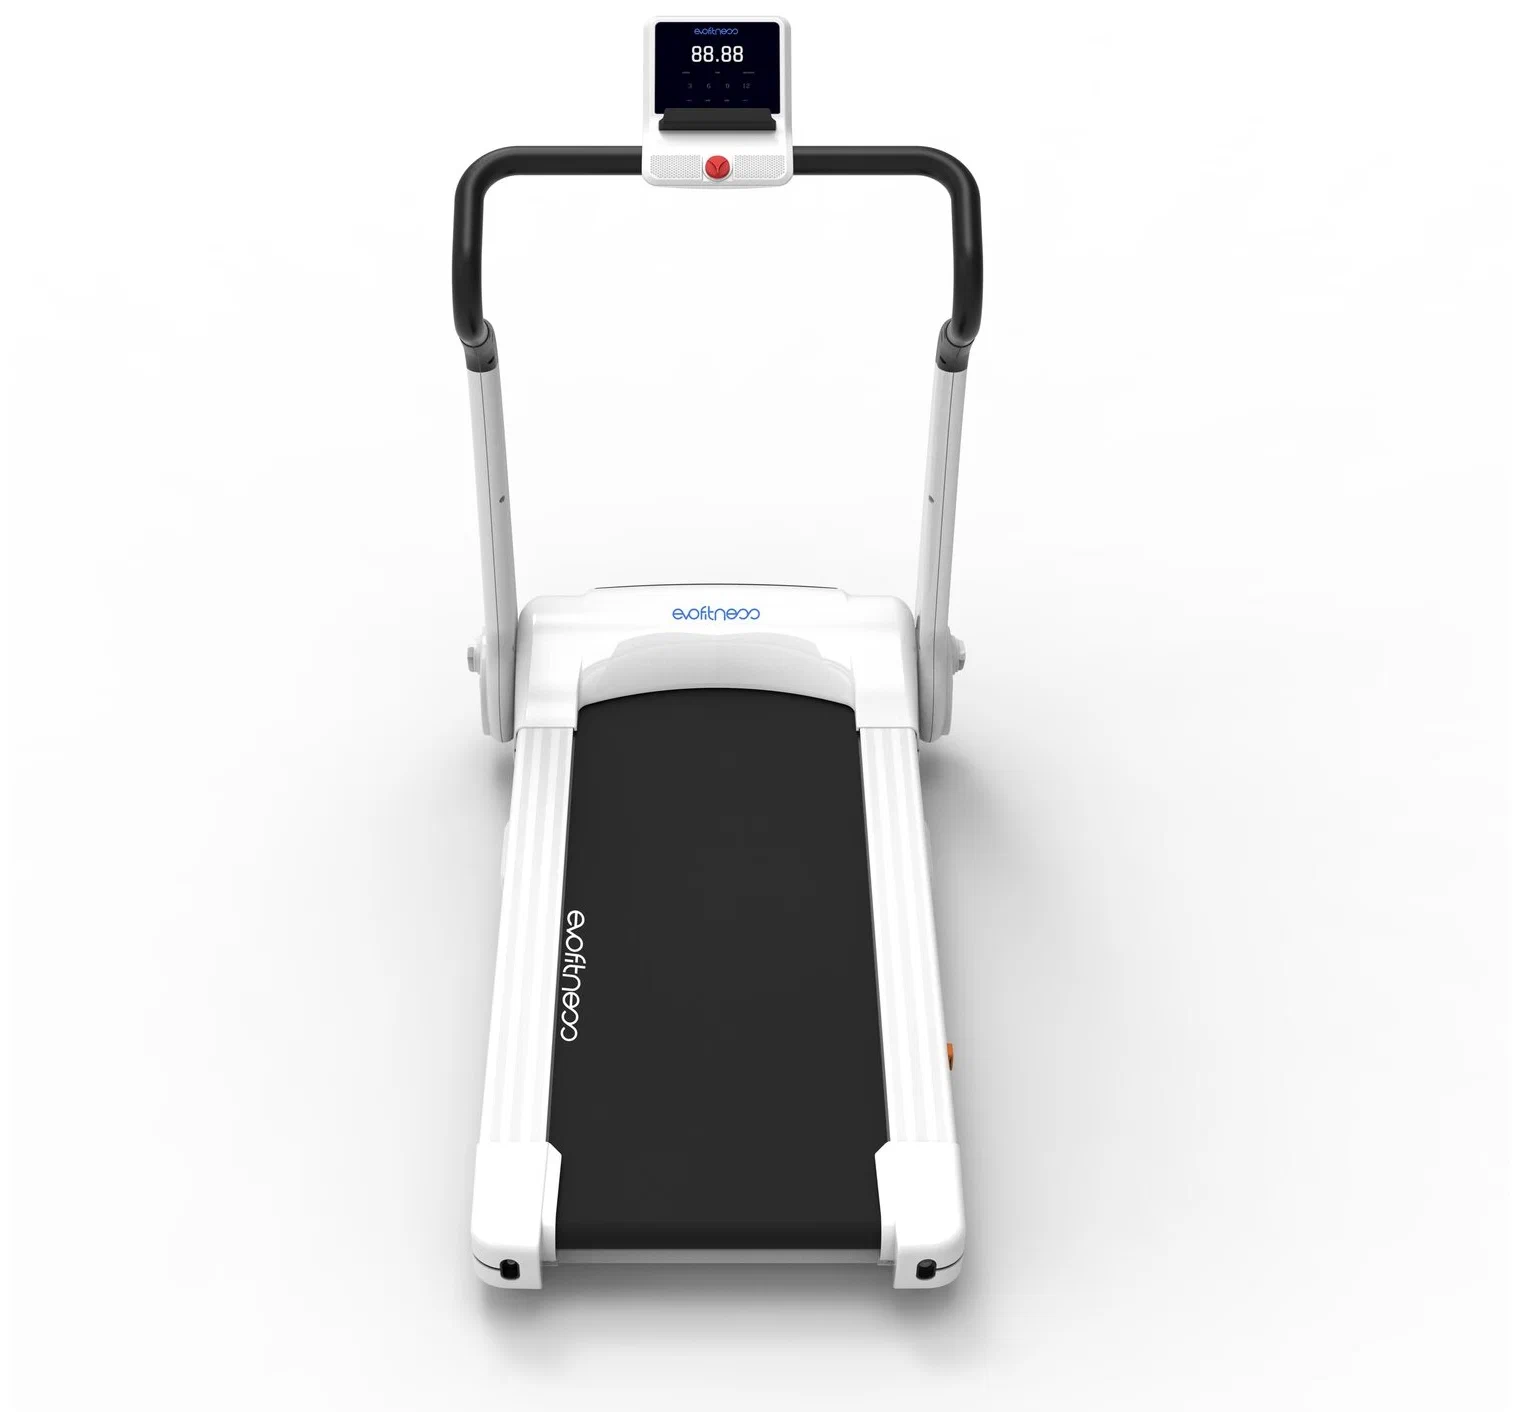 Evo Fitness Cosmo 3 - скорость движения полотна от 0.8 до 12 км/ч